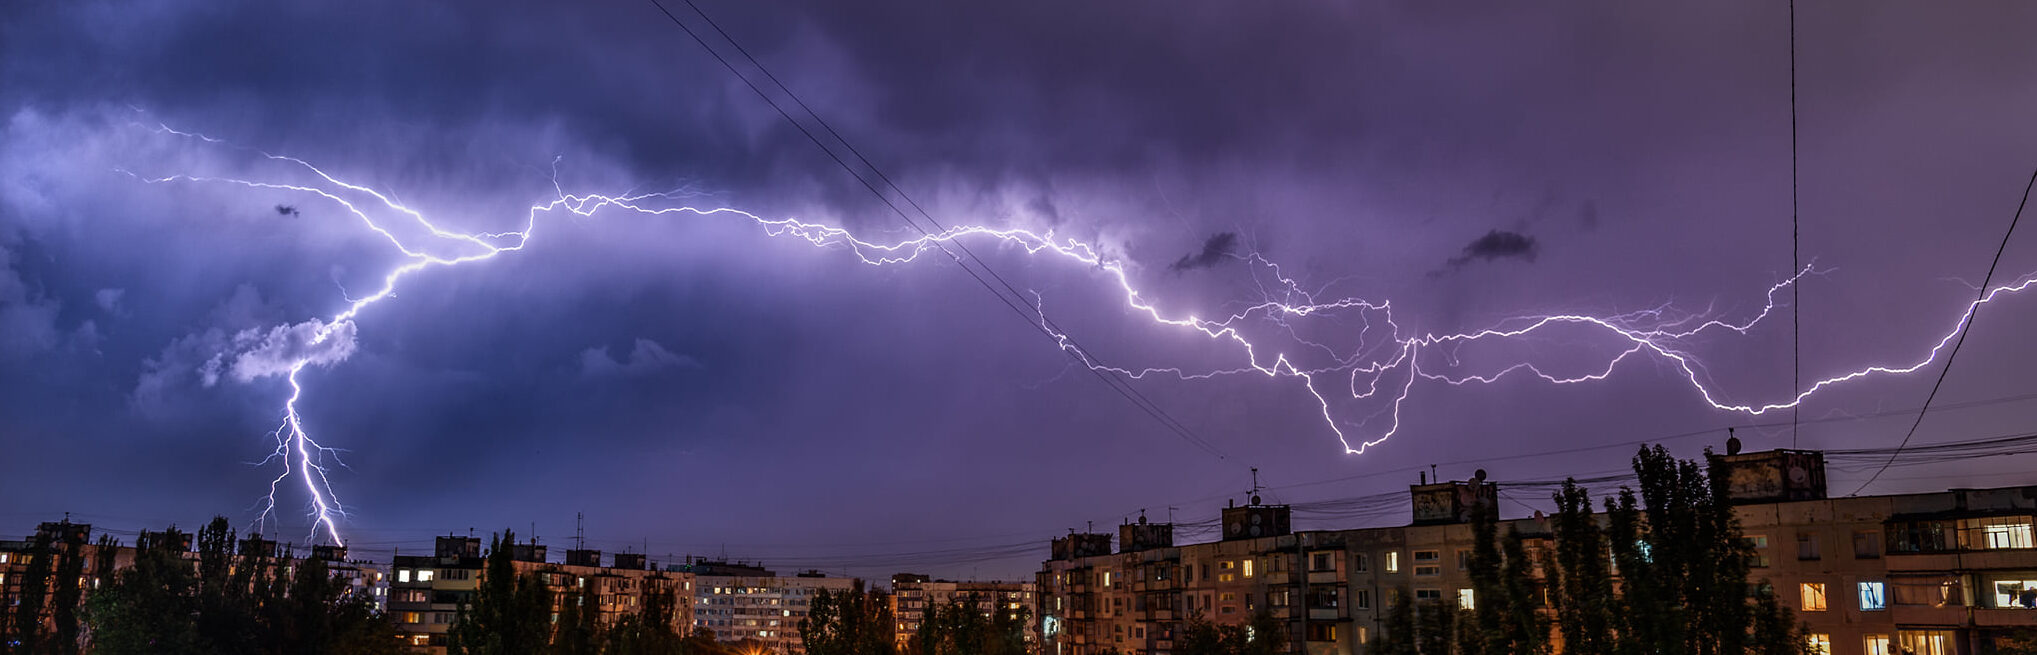 Дождь с грозой: синоптики дали прогноз погоды в Запорожье на 16 августа